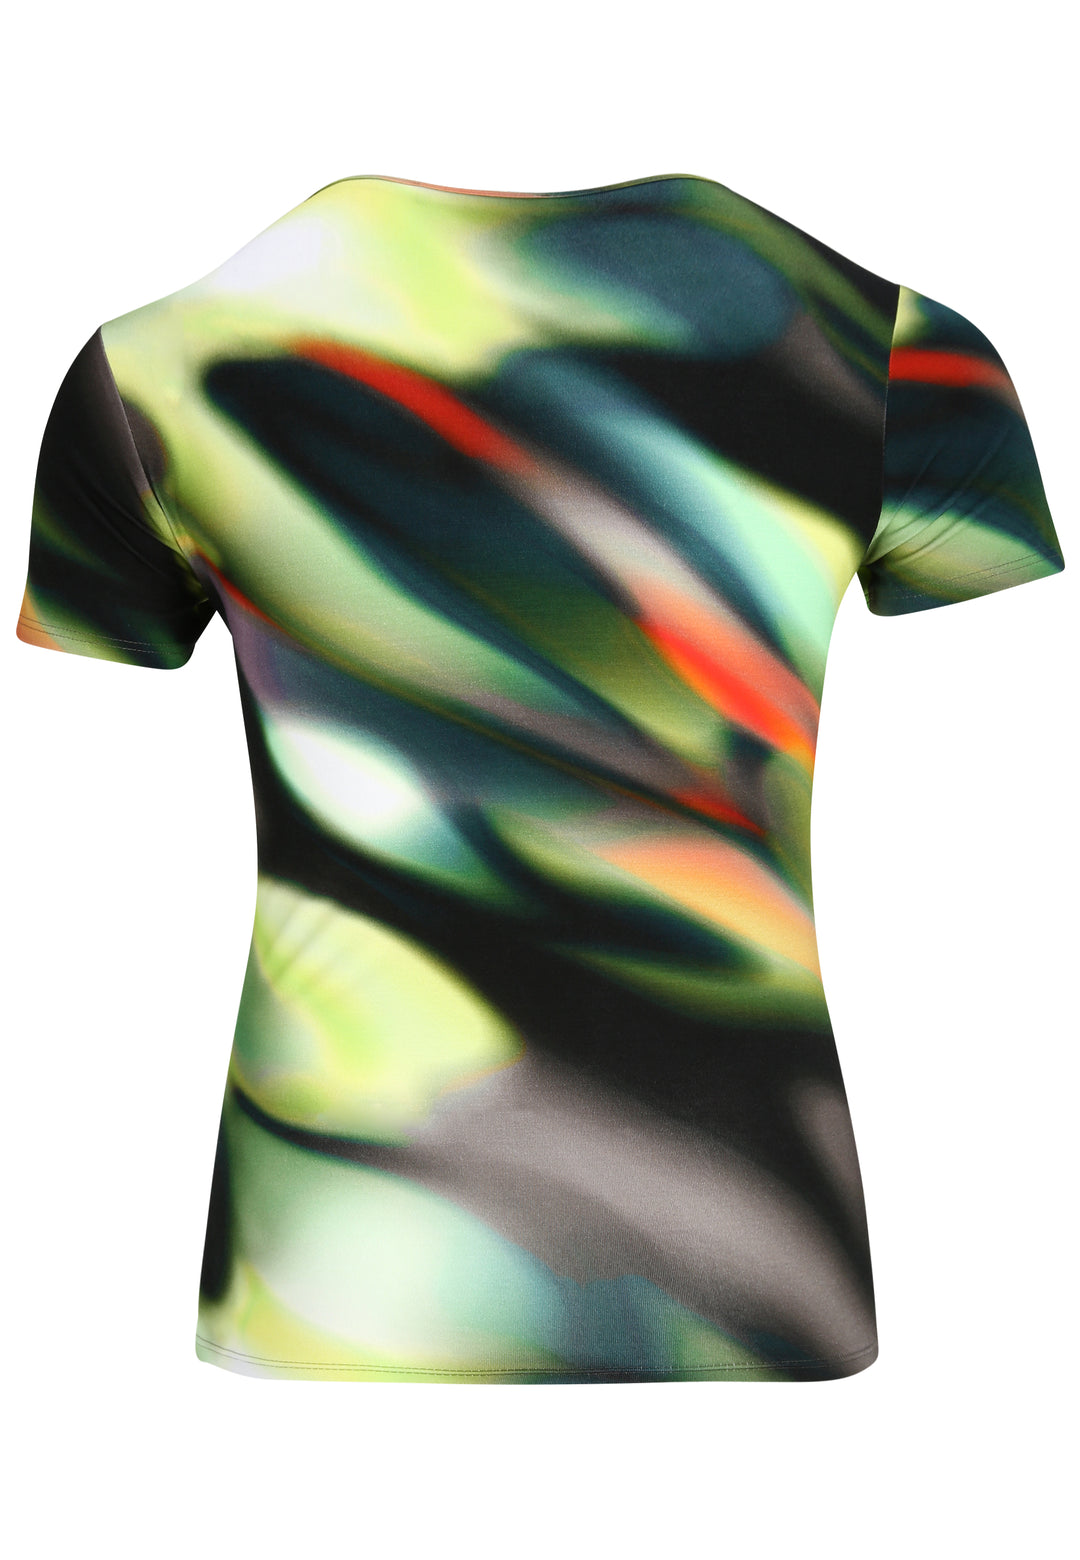 kleurig degrade t-shirt-doris streich-262320-78